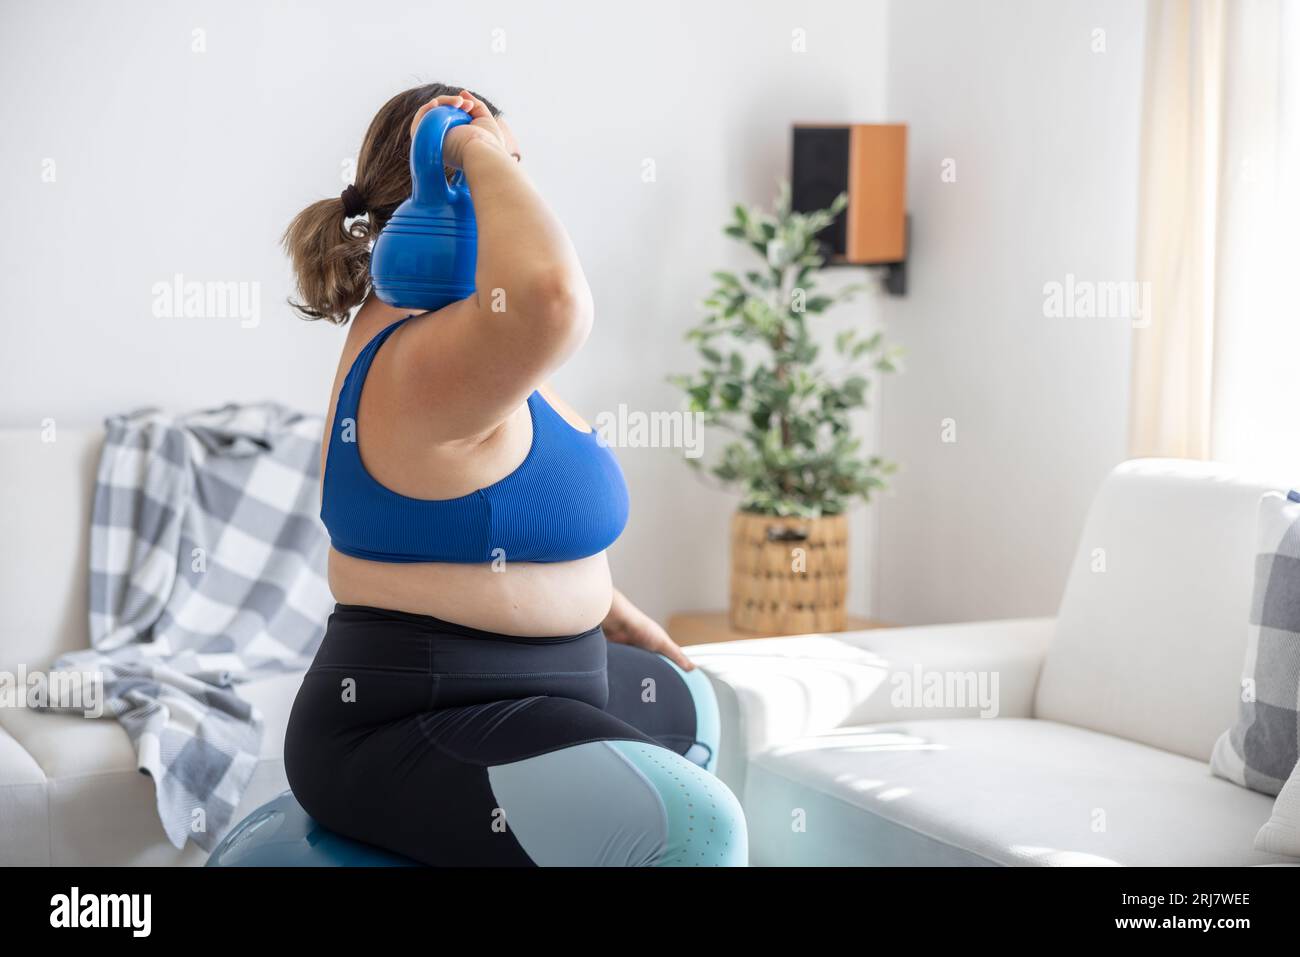 Übergewichtige Dame, die im Wohnzimmer Sport treibt. Sie sitzt auf einem Fitnessball und hält eine Kurzhantel auf der Schulter. Stockfoto